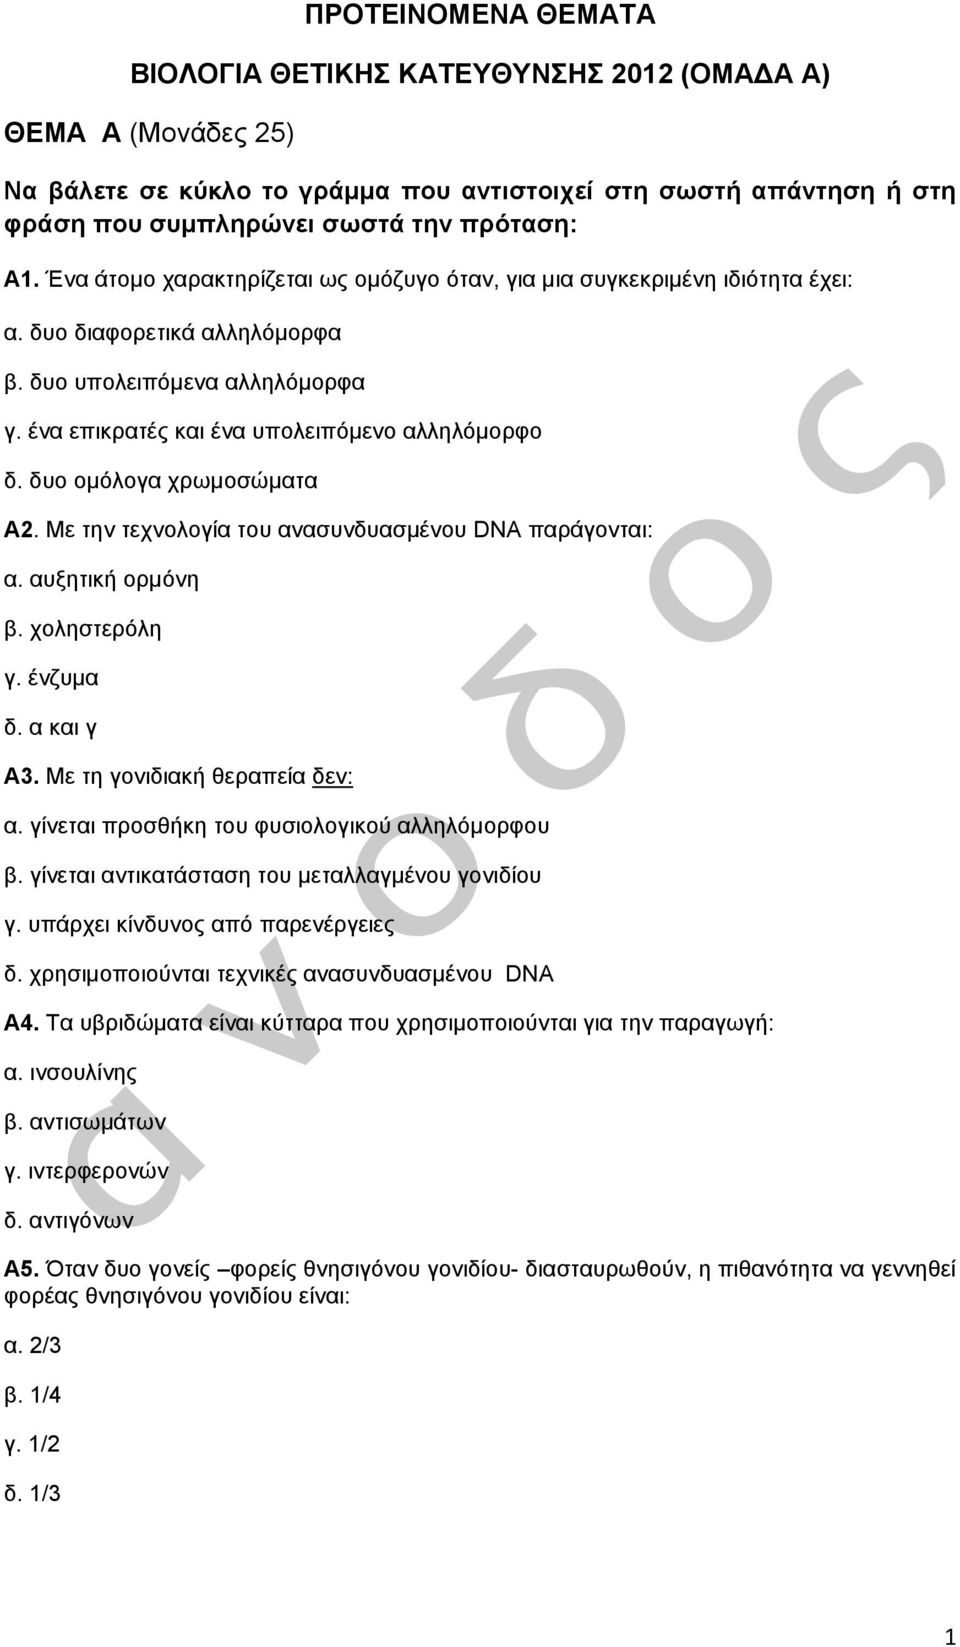 δυο ομόλογα χρωμοσώματα Α2. Με την τεχνολογία του ανασυνδυασμένου DNA παράγονται: α. αυξητική ορμόνη β. χοληστερόλη γ. ένζυμα δ. α και γ Α3. Με τη γονιδιακή θεραπεία δεν: α.